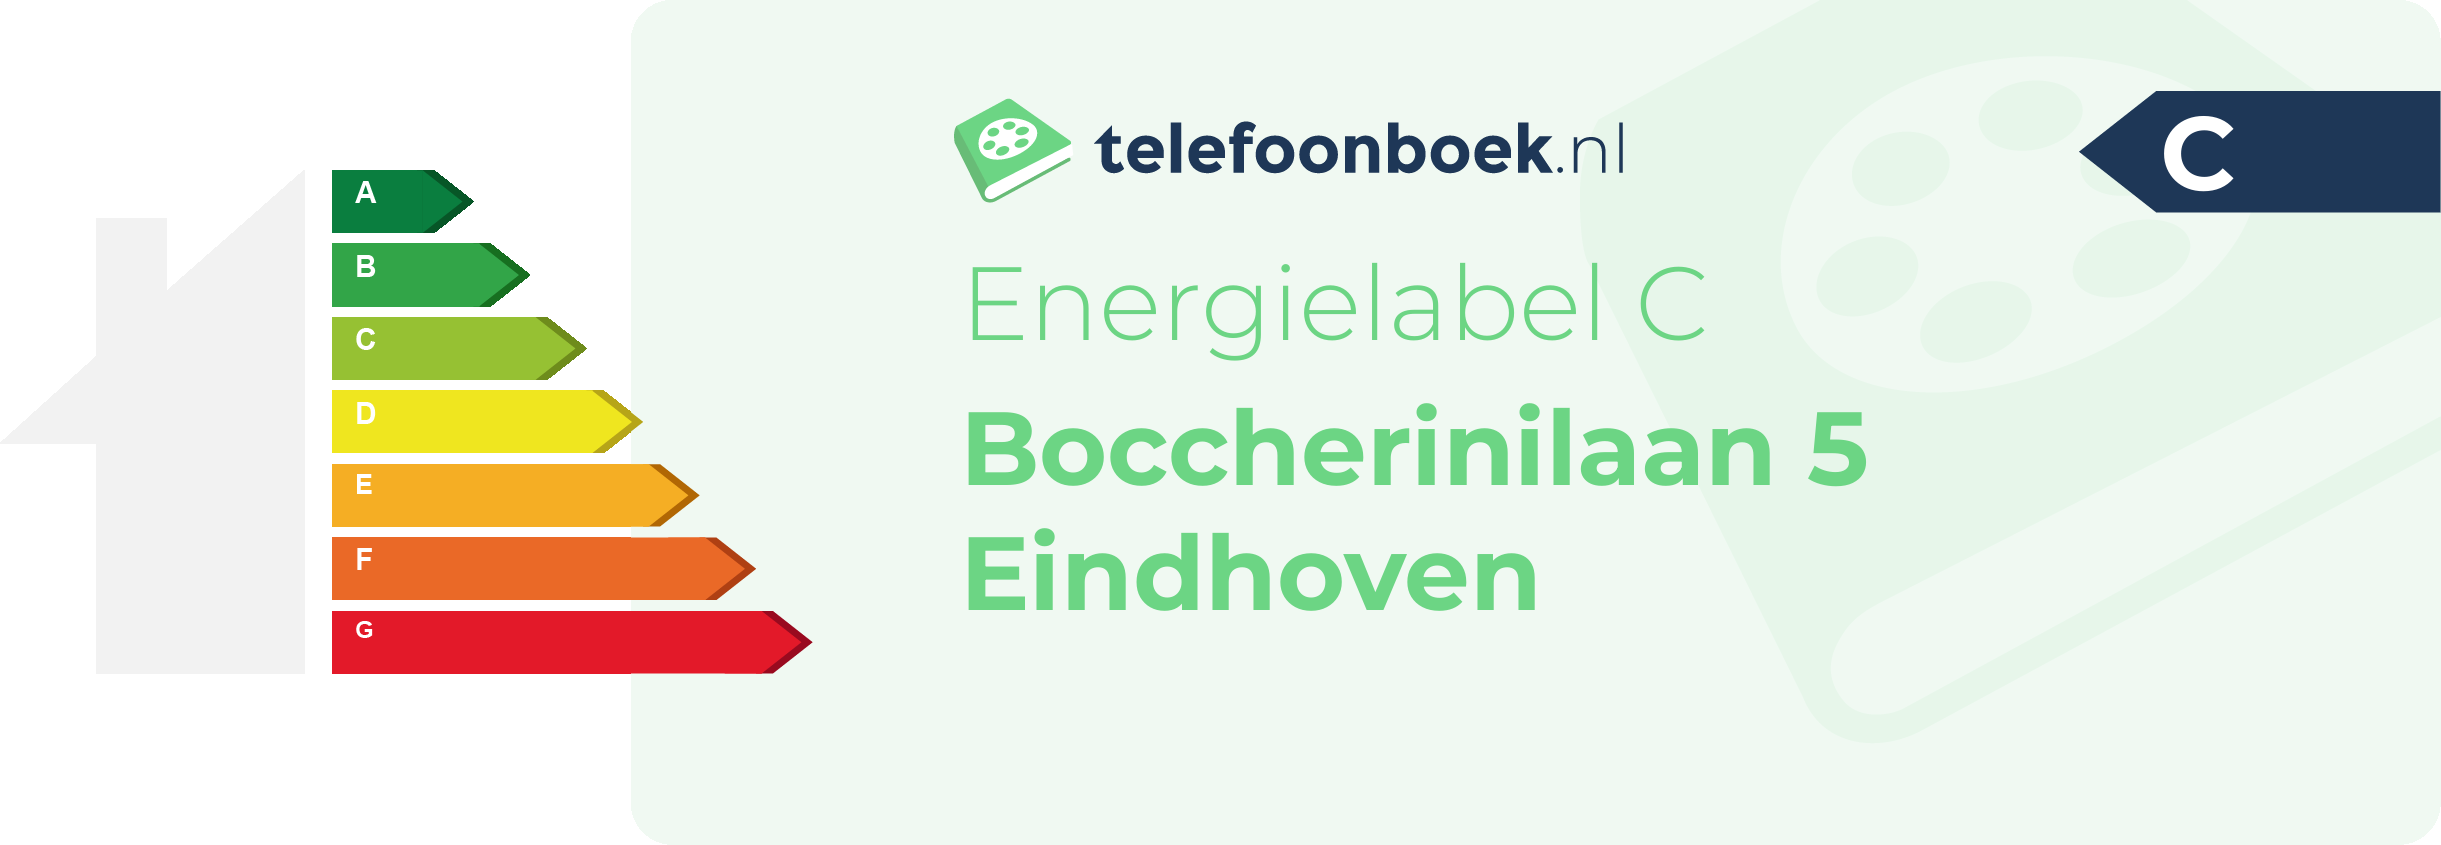 Energielabel Boccherinilaan 5 Eindhoven